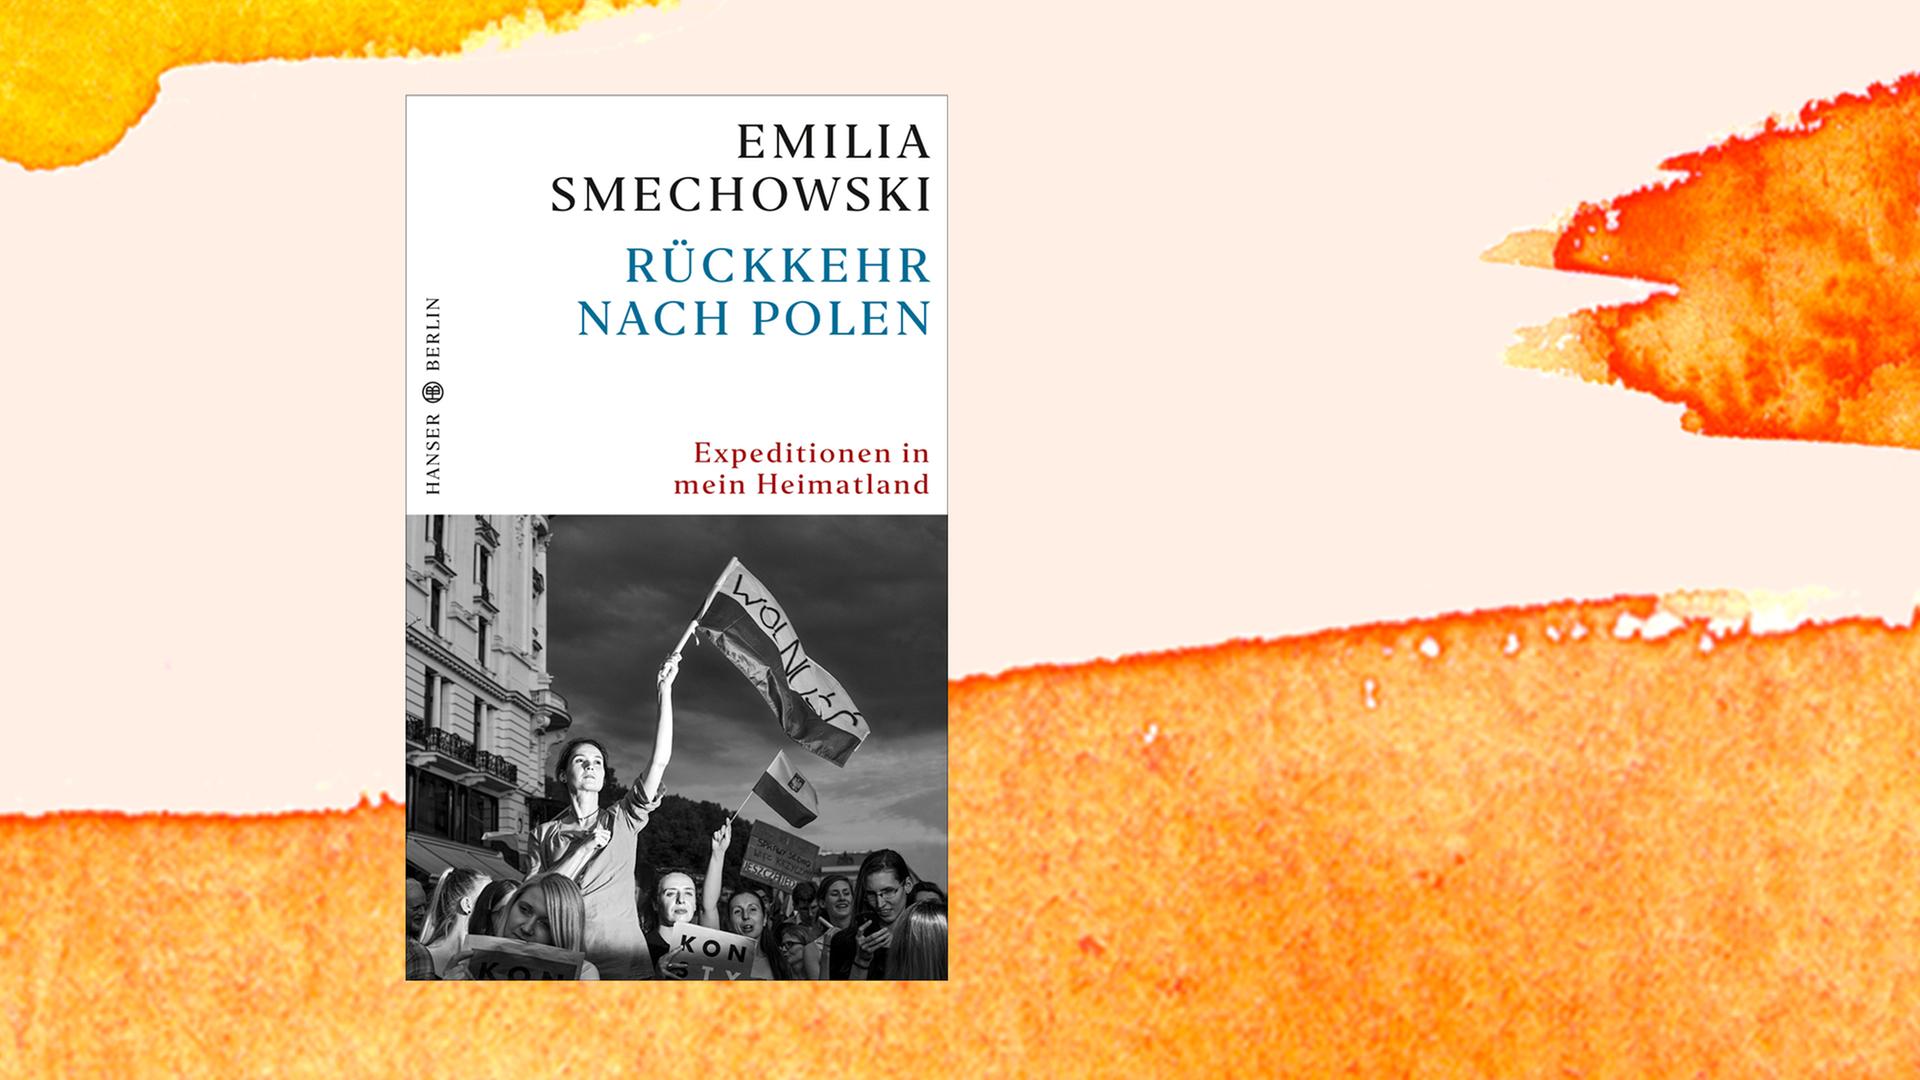 Das Cover von Emilia Smechowskis "Rückkehr nach Polen" auf einer orangenen Fläche